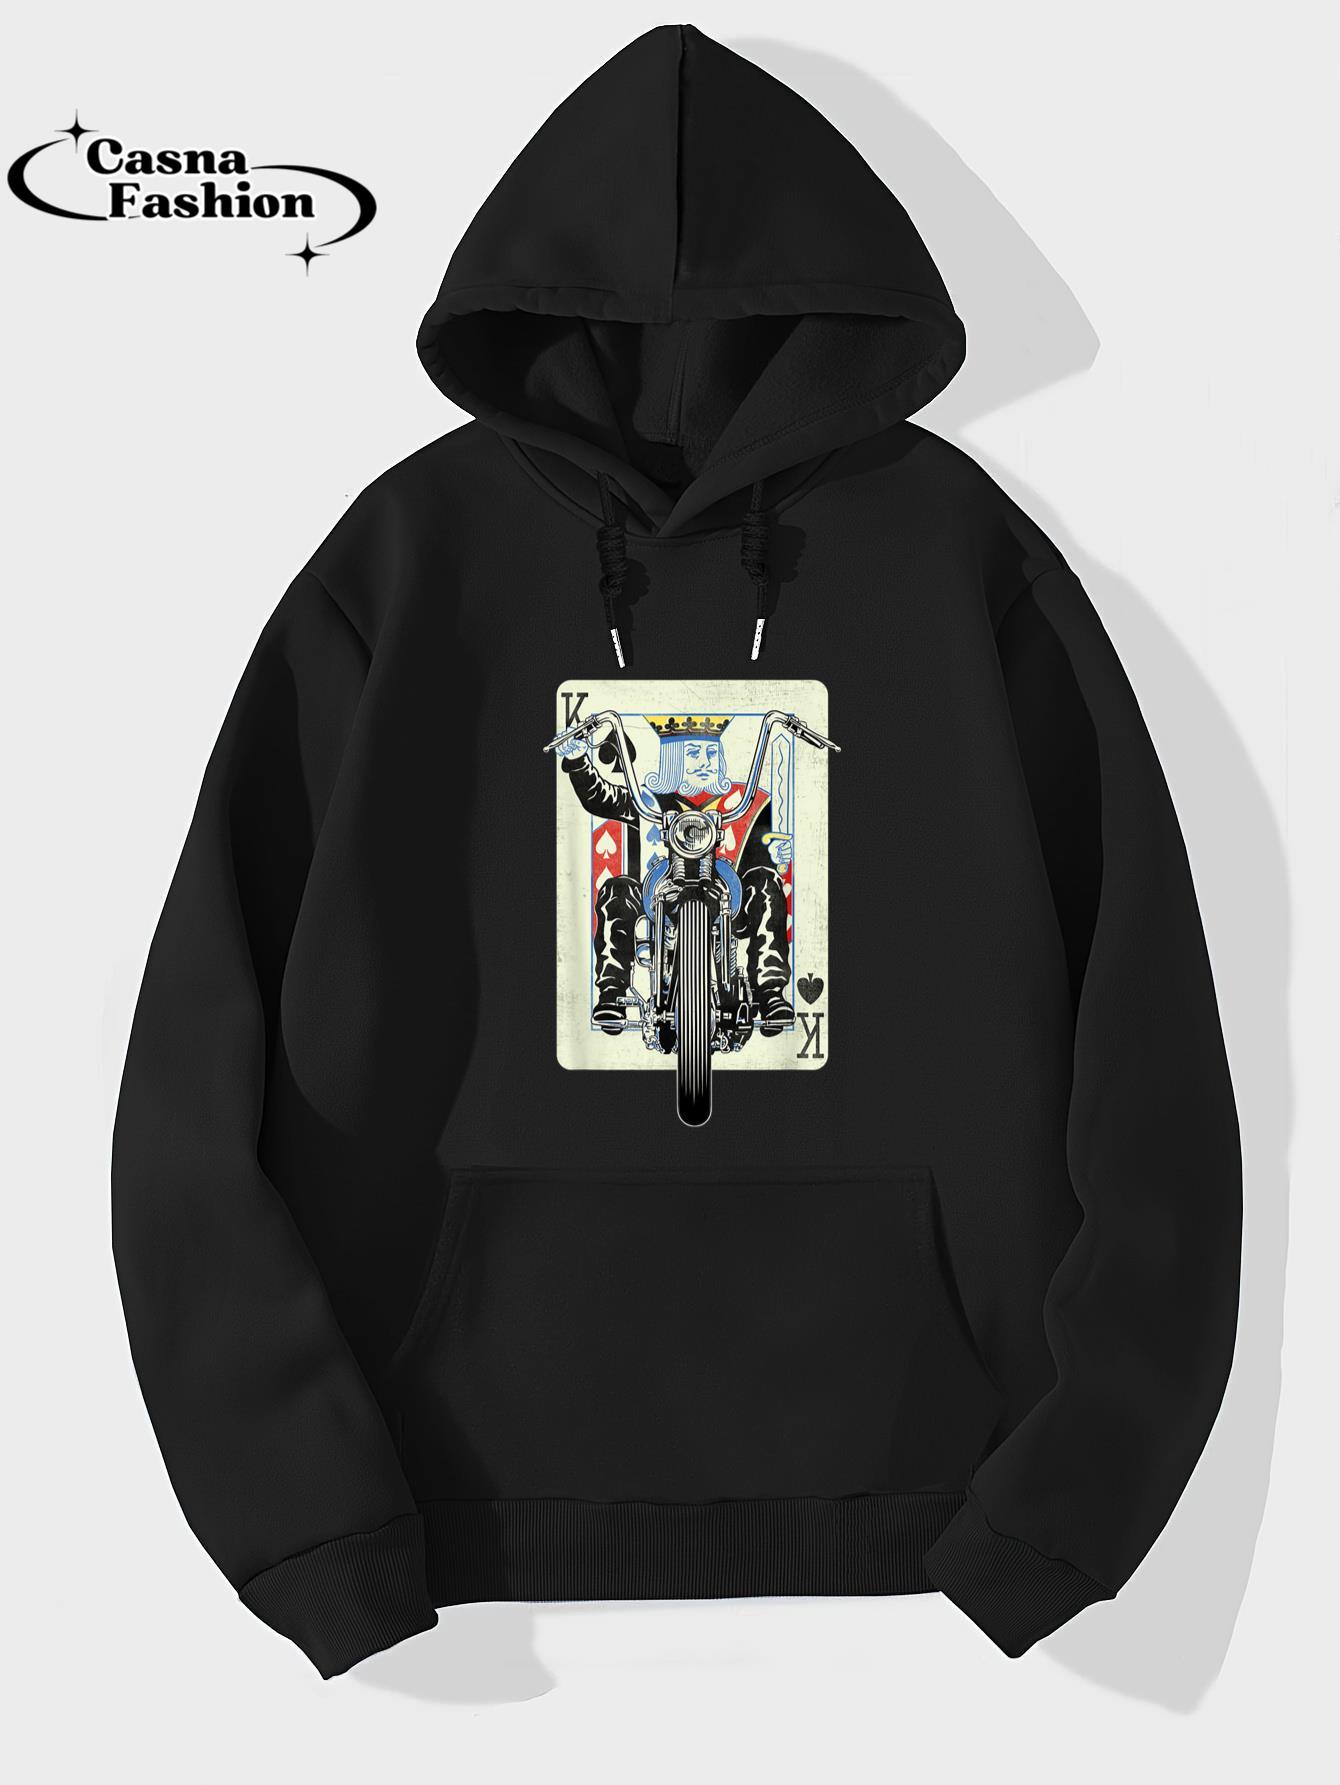 casnafashion_Hoodie_Vintage King Card Motorcycle Poker Black Jack Gambling Biker T-Shirt_hoodie_black hoodie